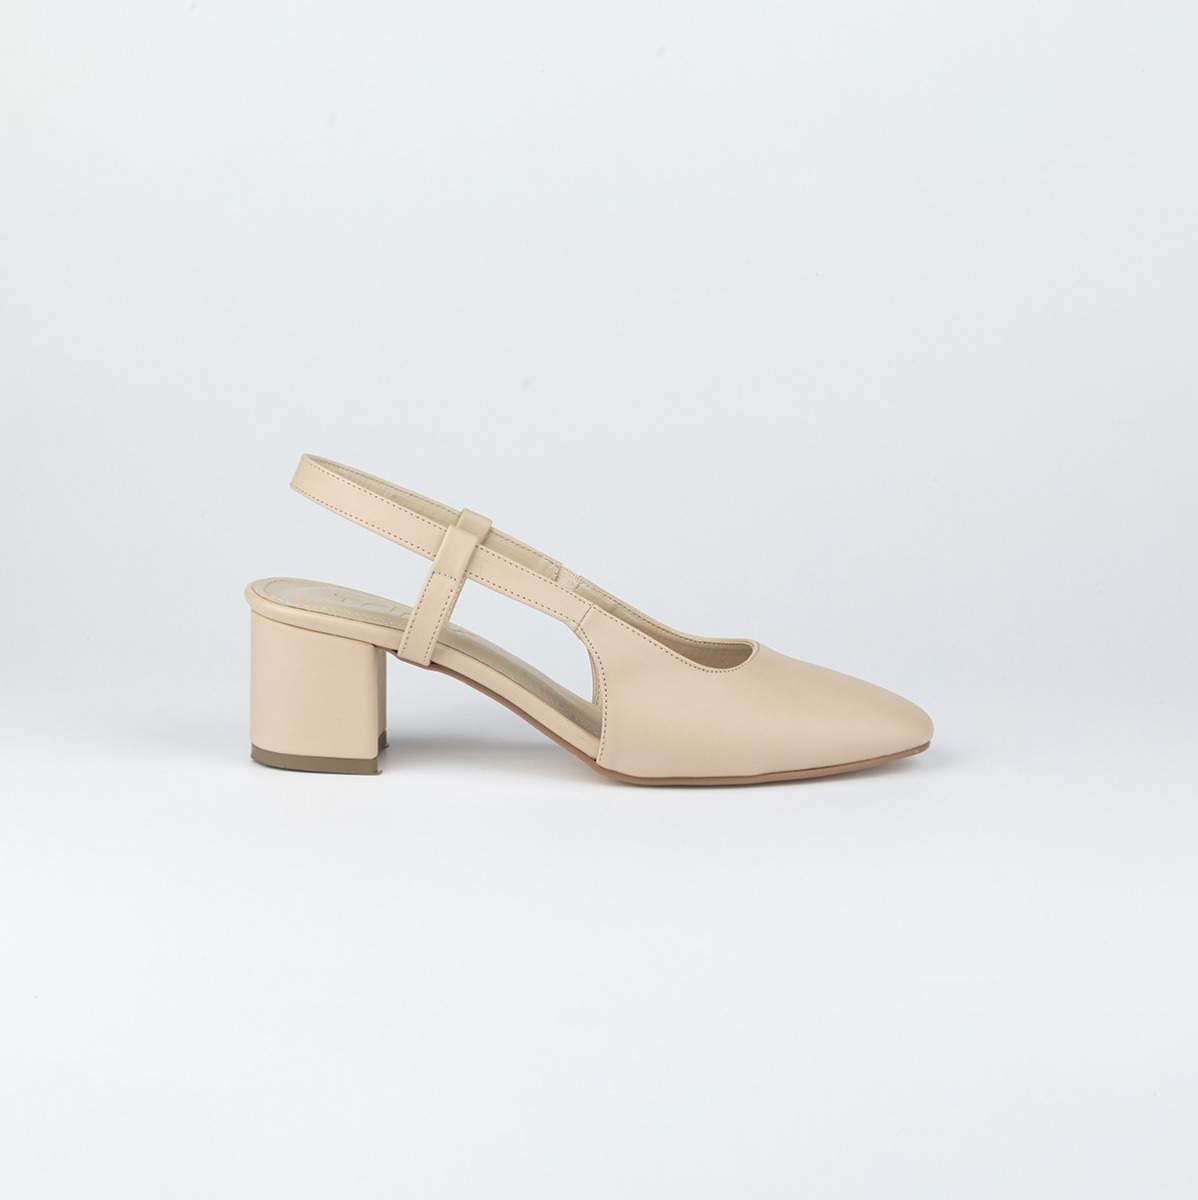 Flo Kadın Klasik Topuklu Ayakkabı. 6